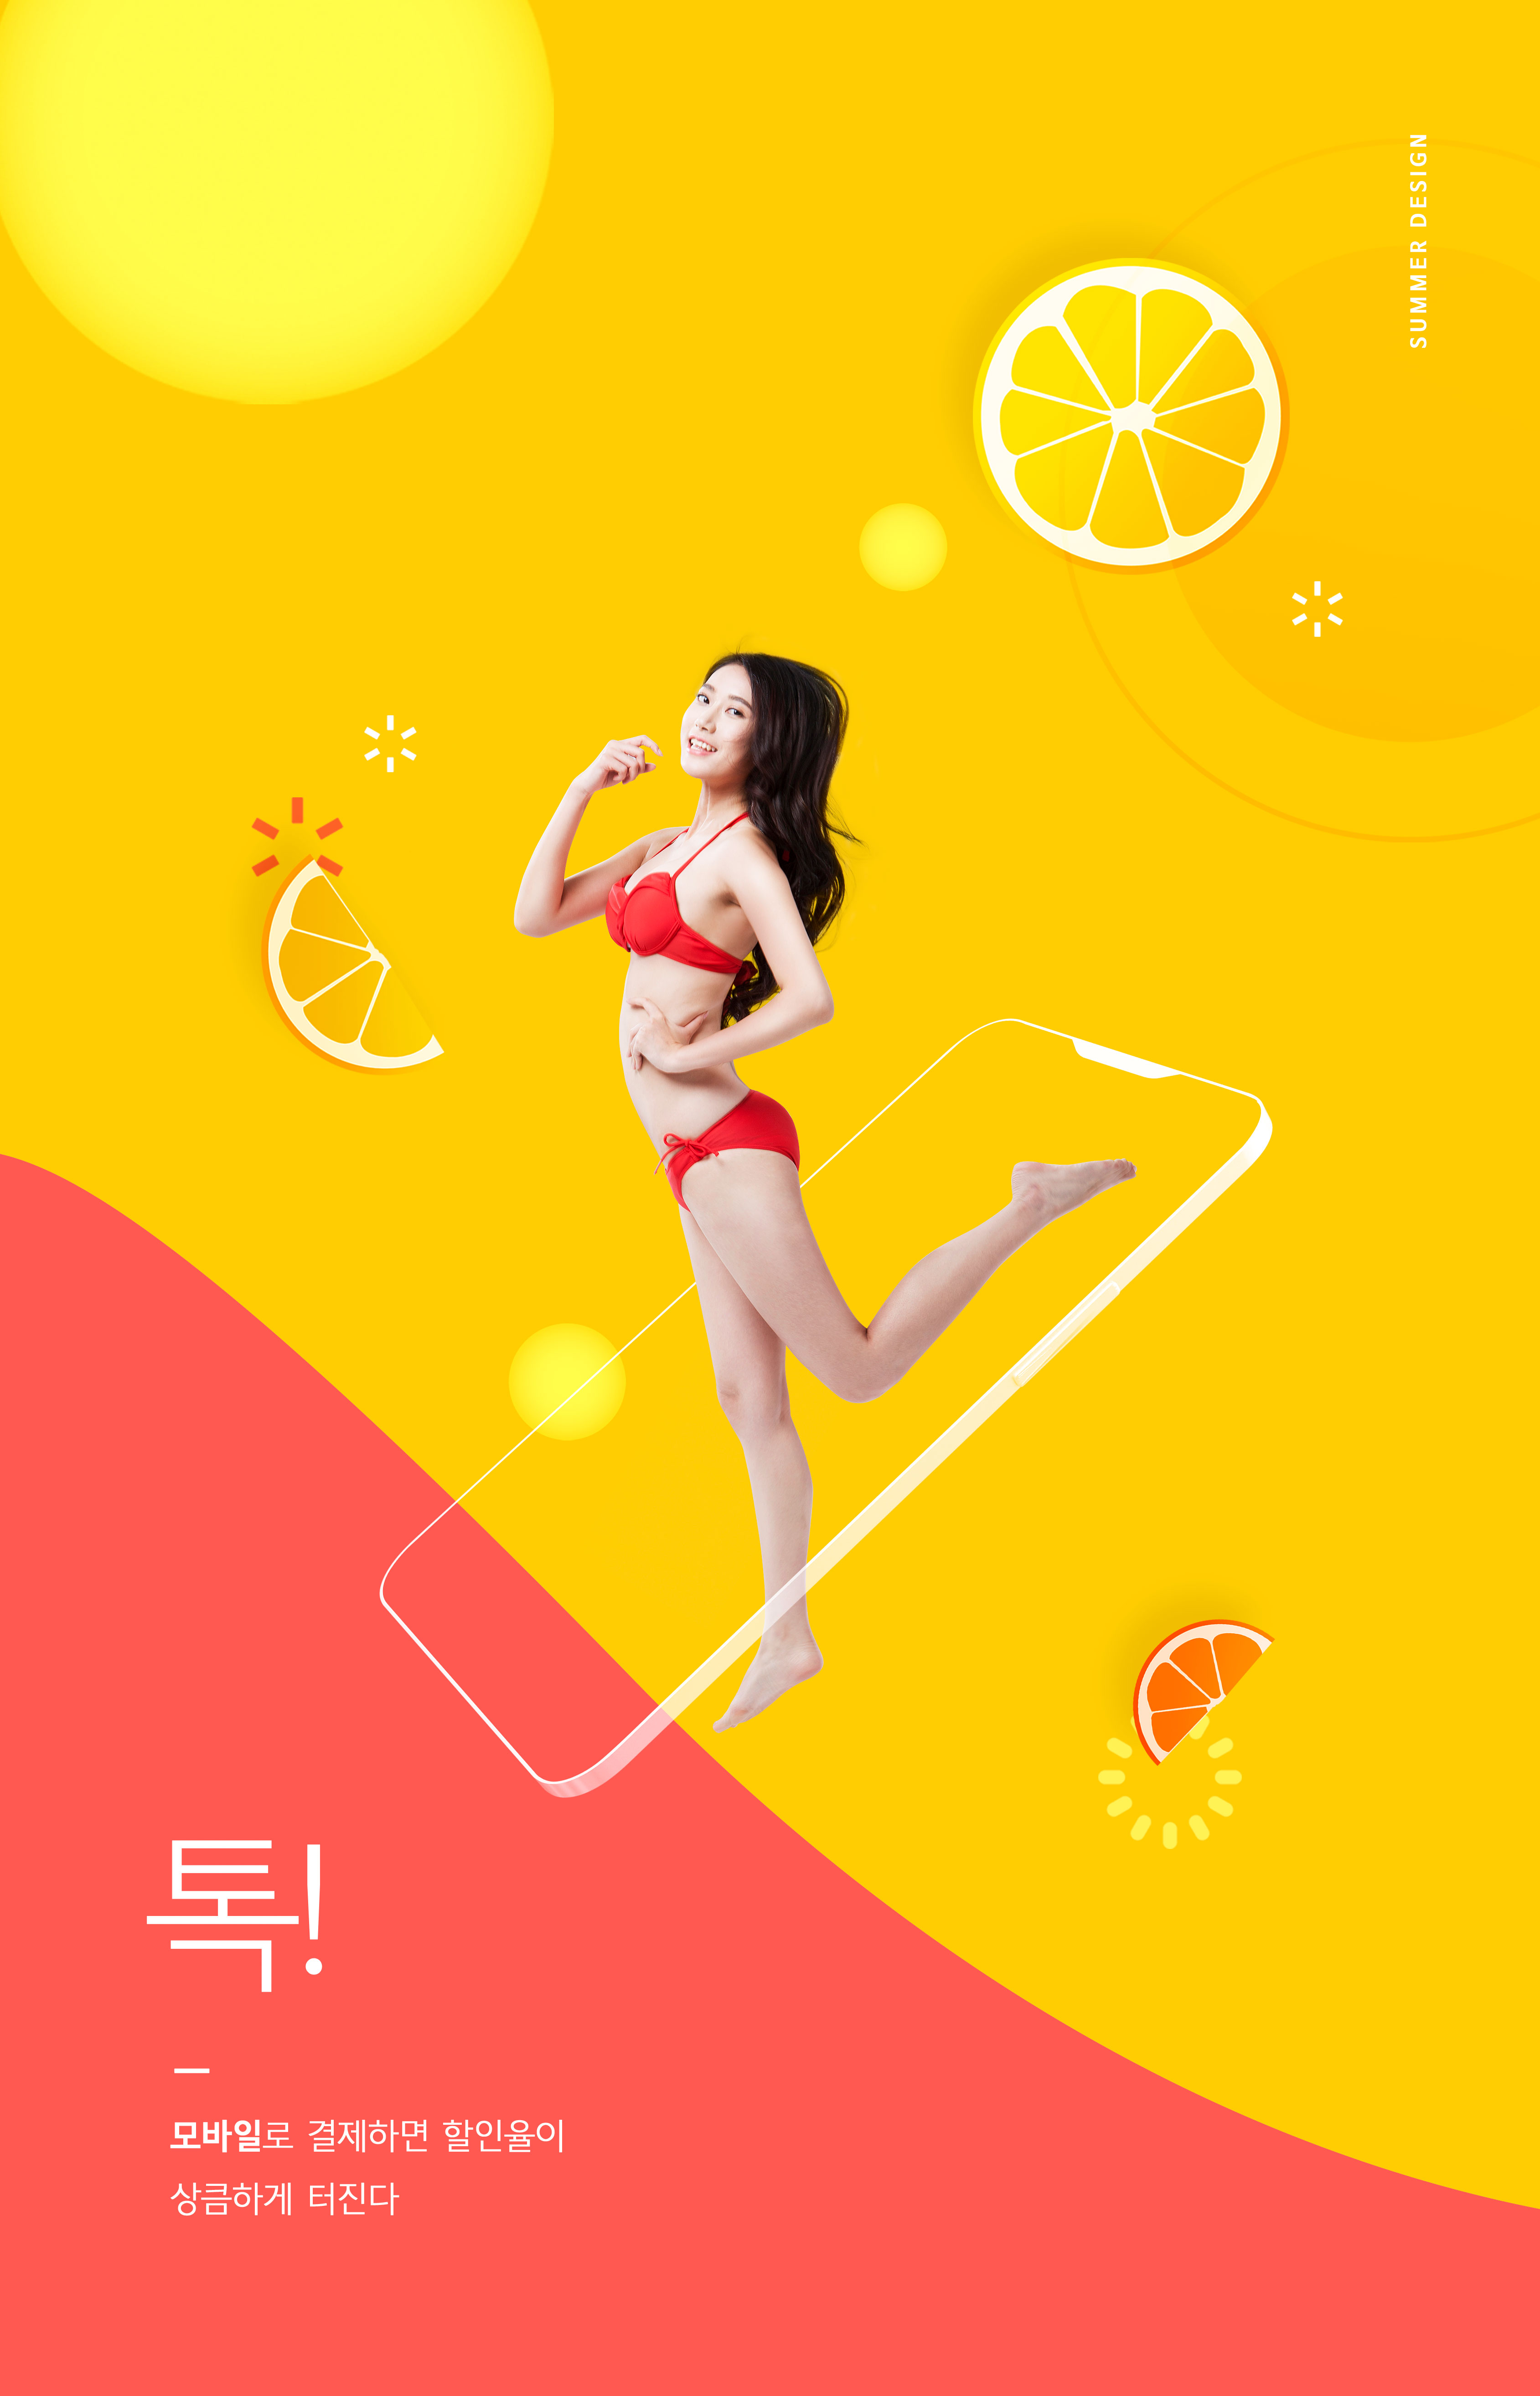 夏季主题性感美女比基尼派对活动海报设计套装插图(5)